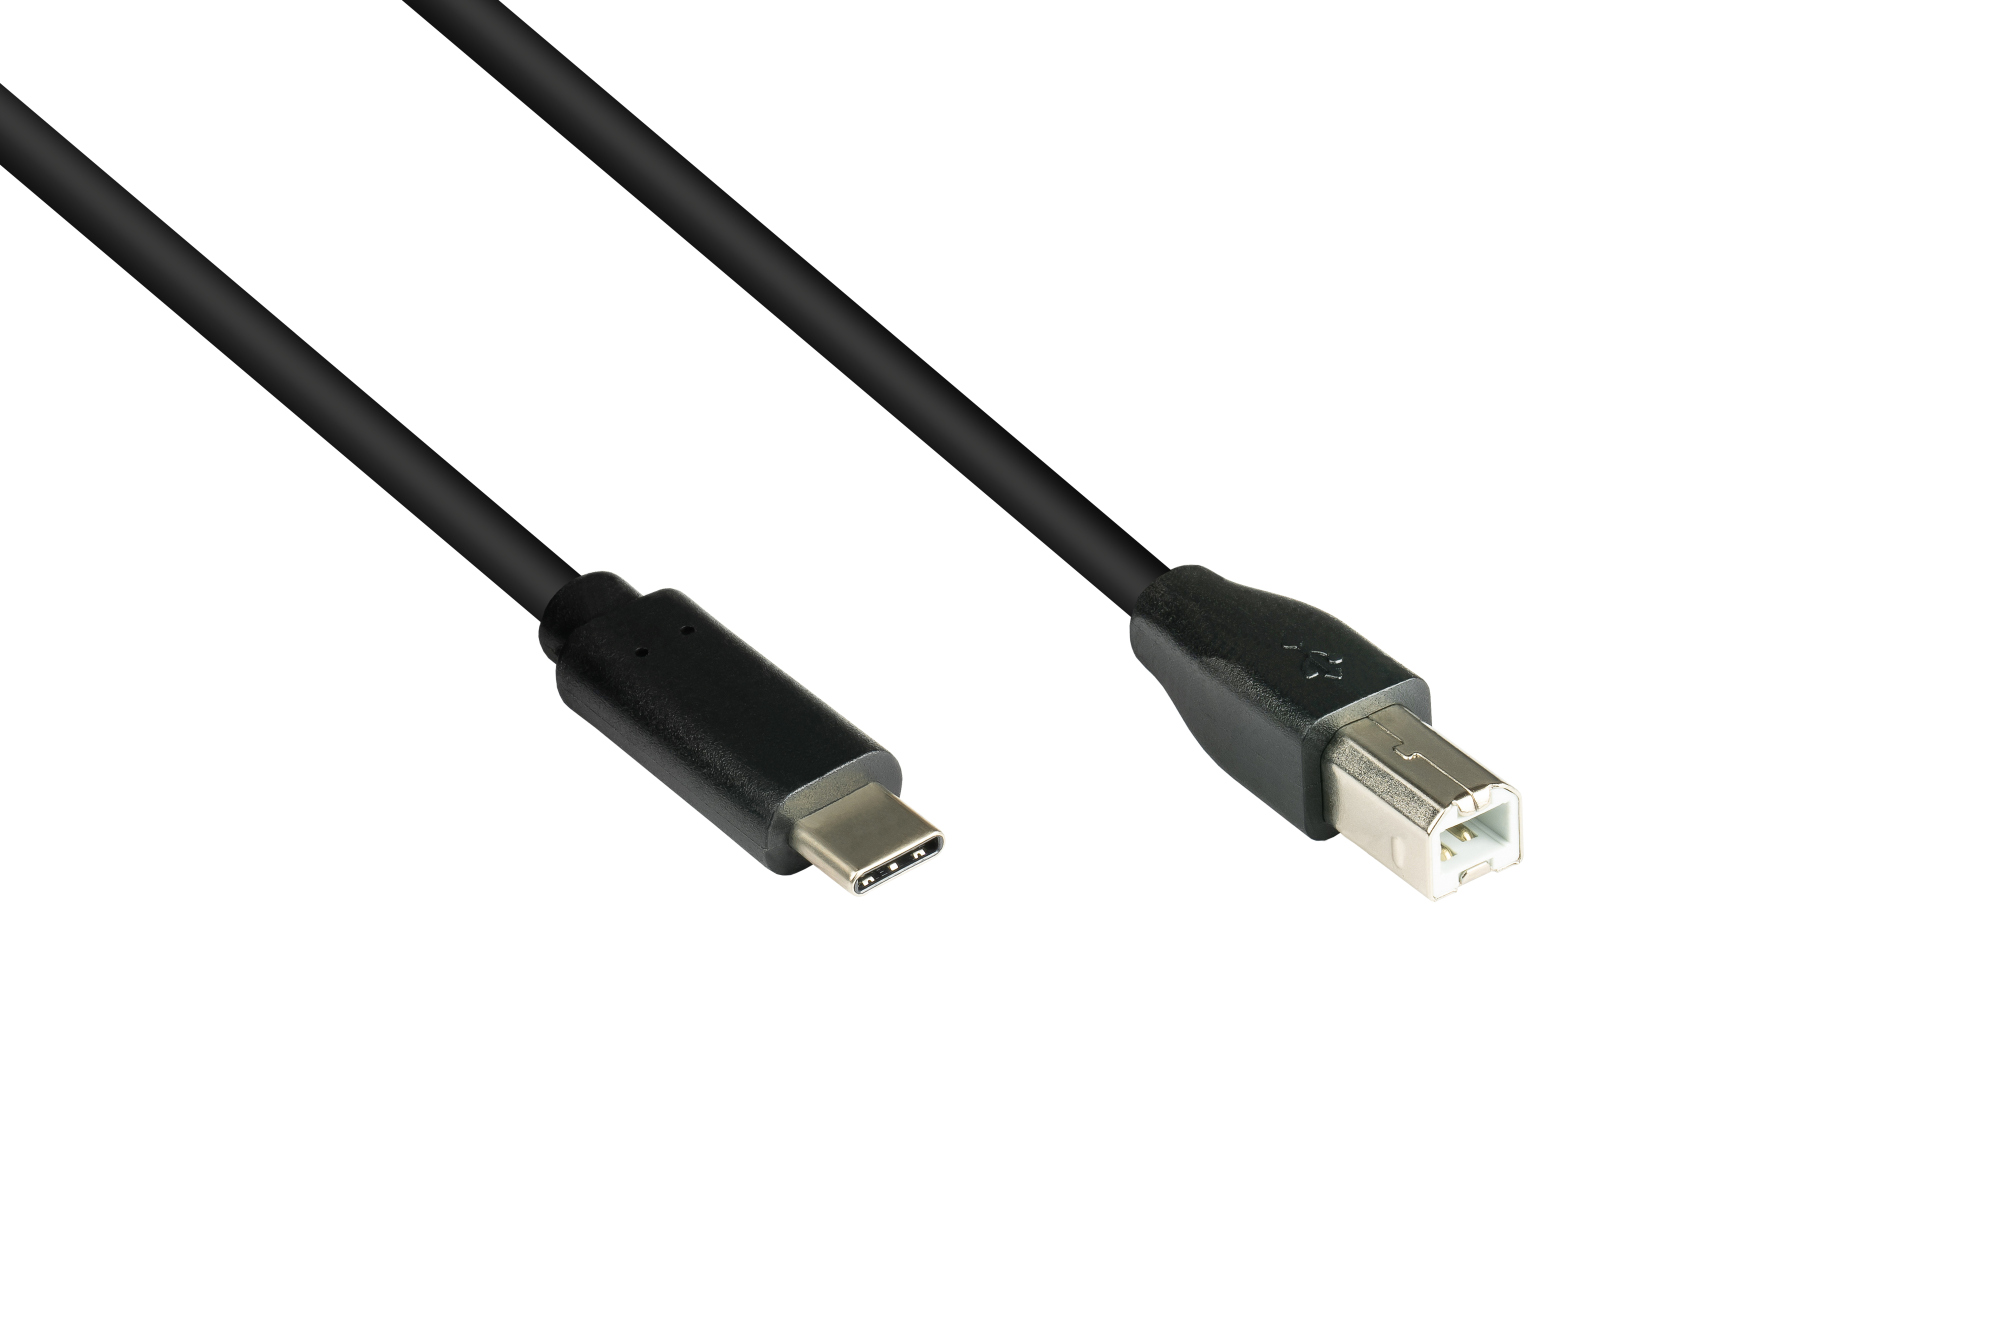 Anschlusskabel USB 2.0, USB-C™ Stecker an USB 2.0 B Stecker, CU, schwarz, 0,5m, Good Connections®